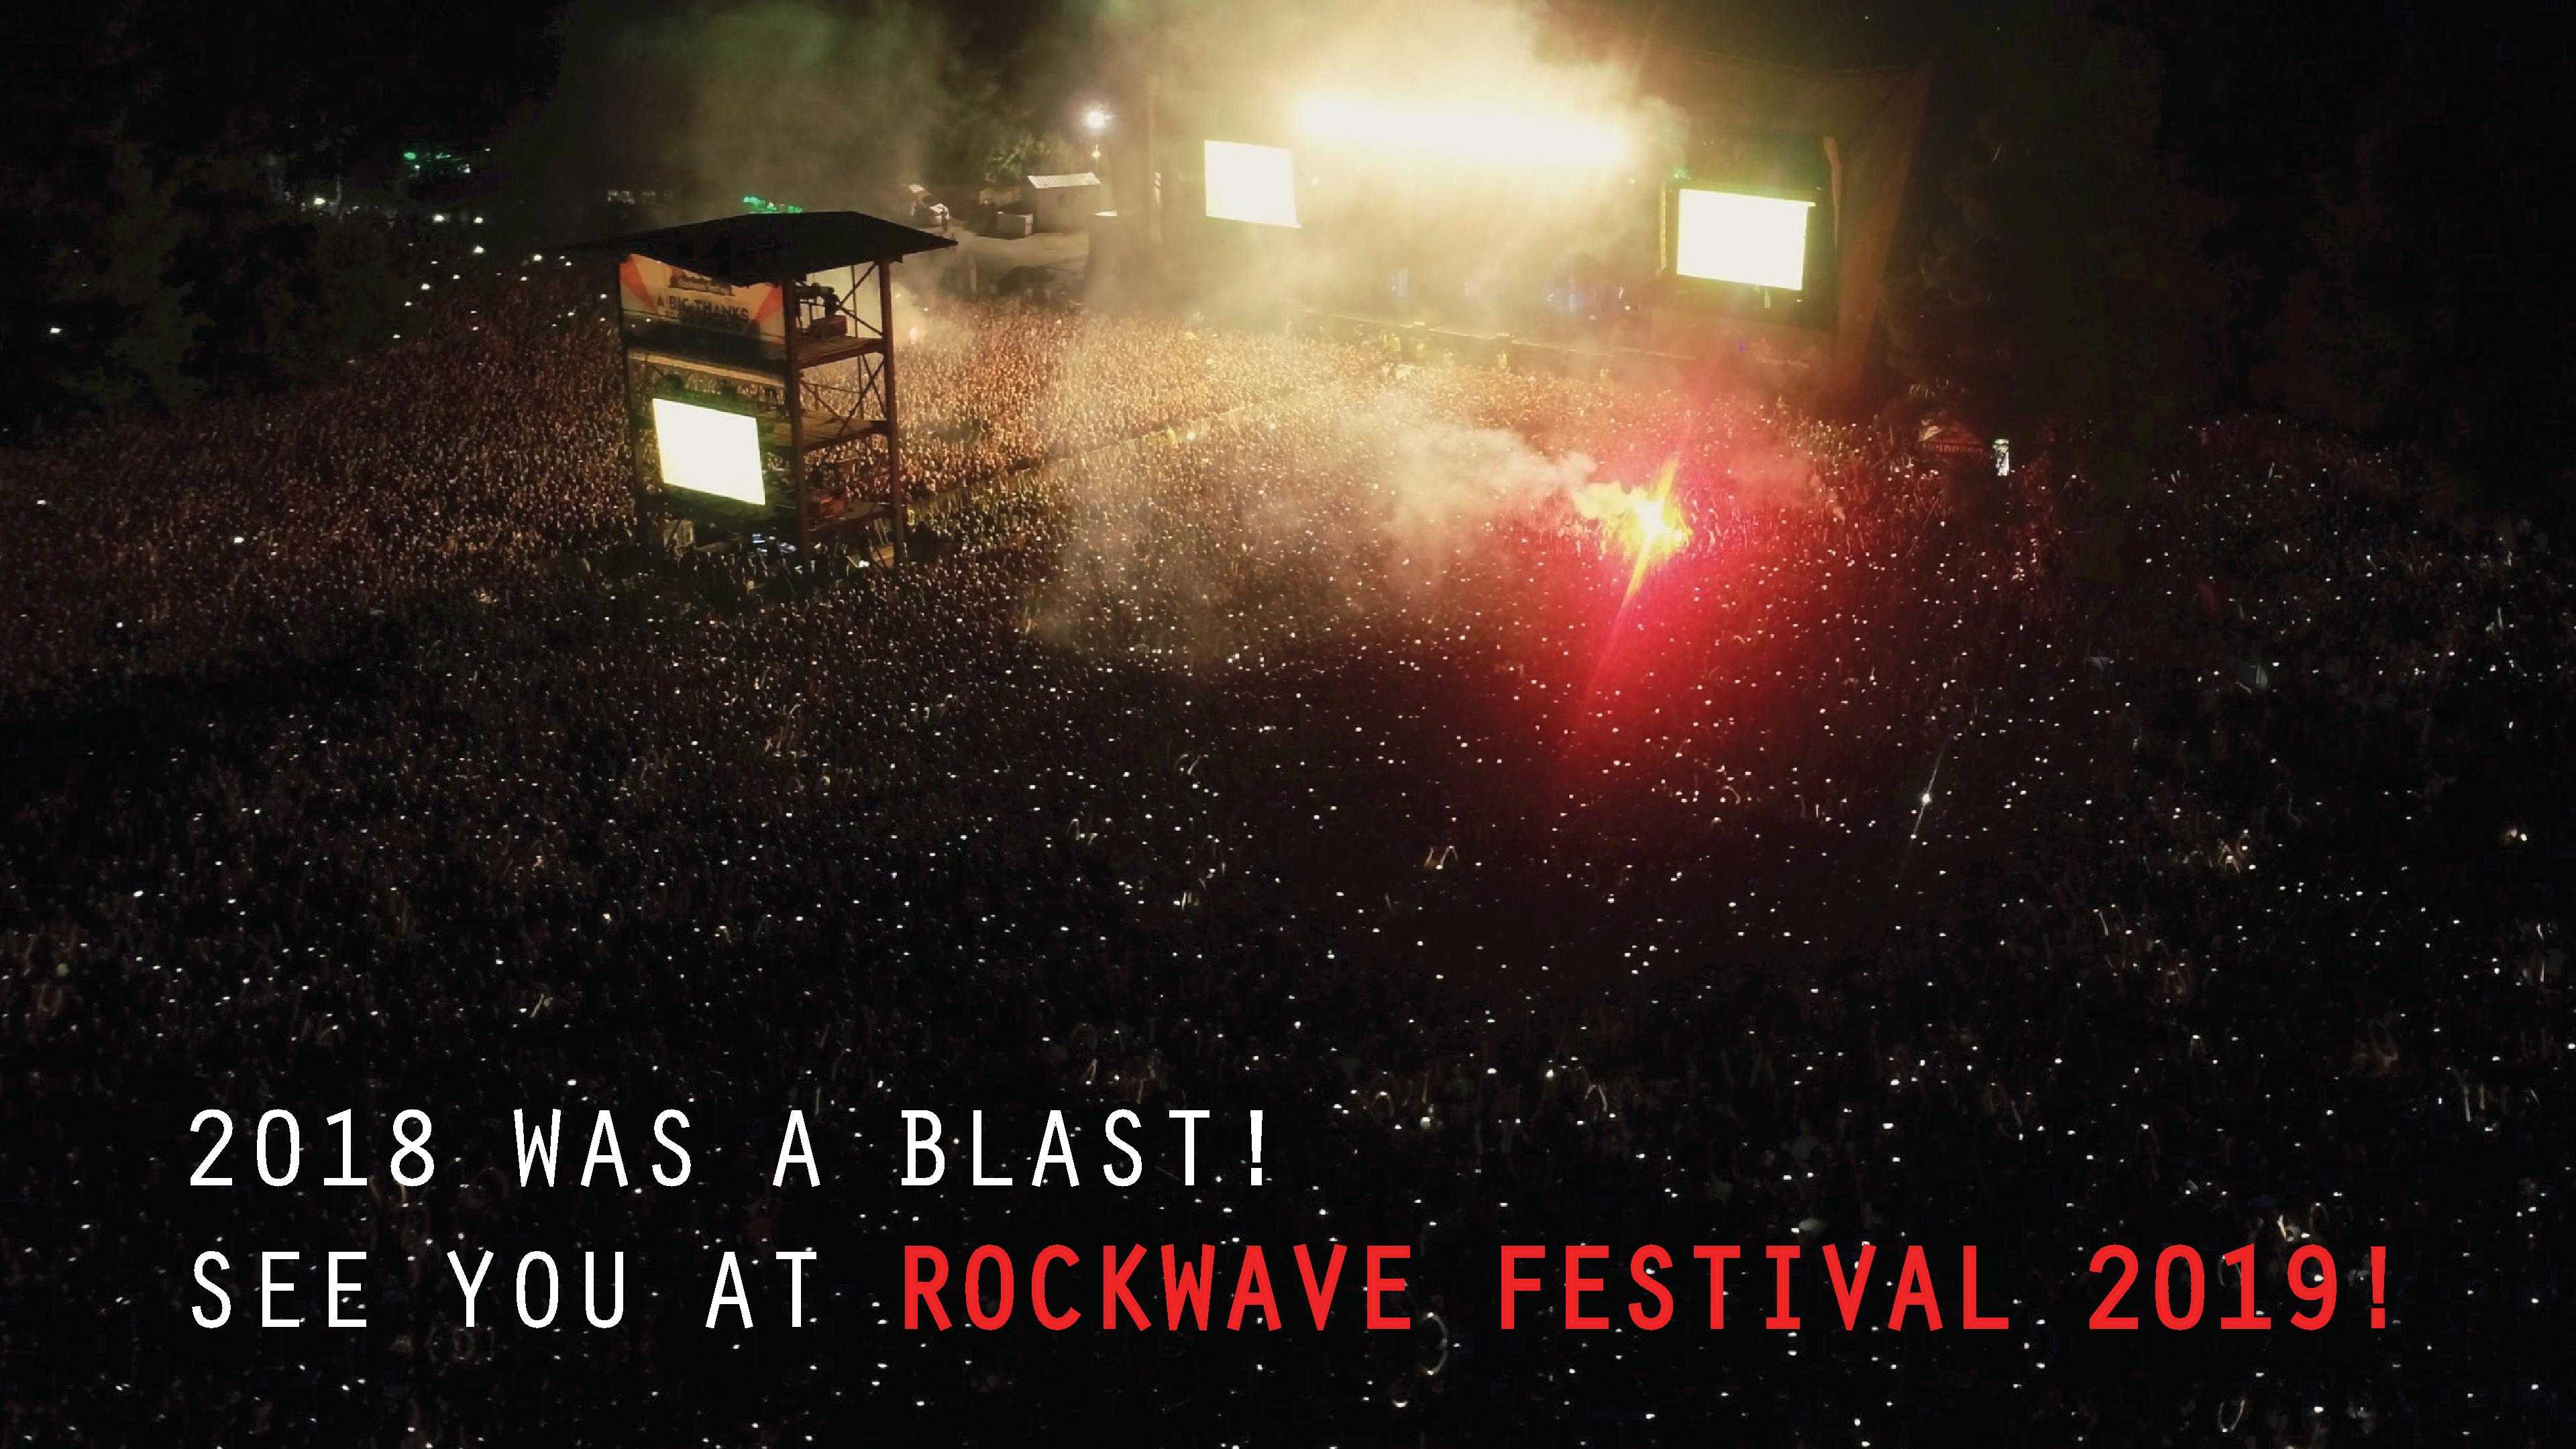 Rockwave Festival 2018 rockwavefestival.gr